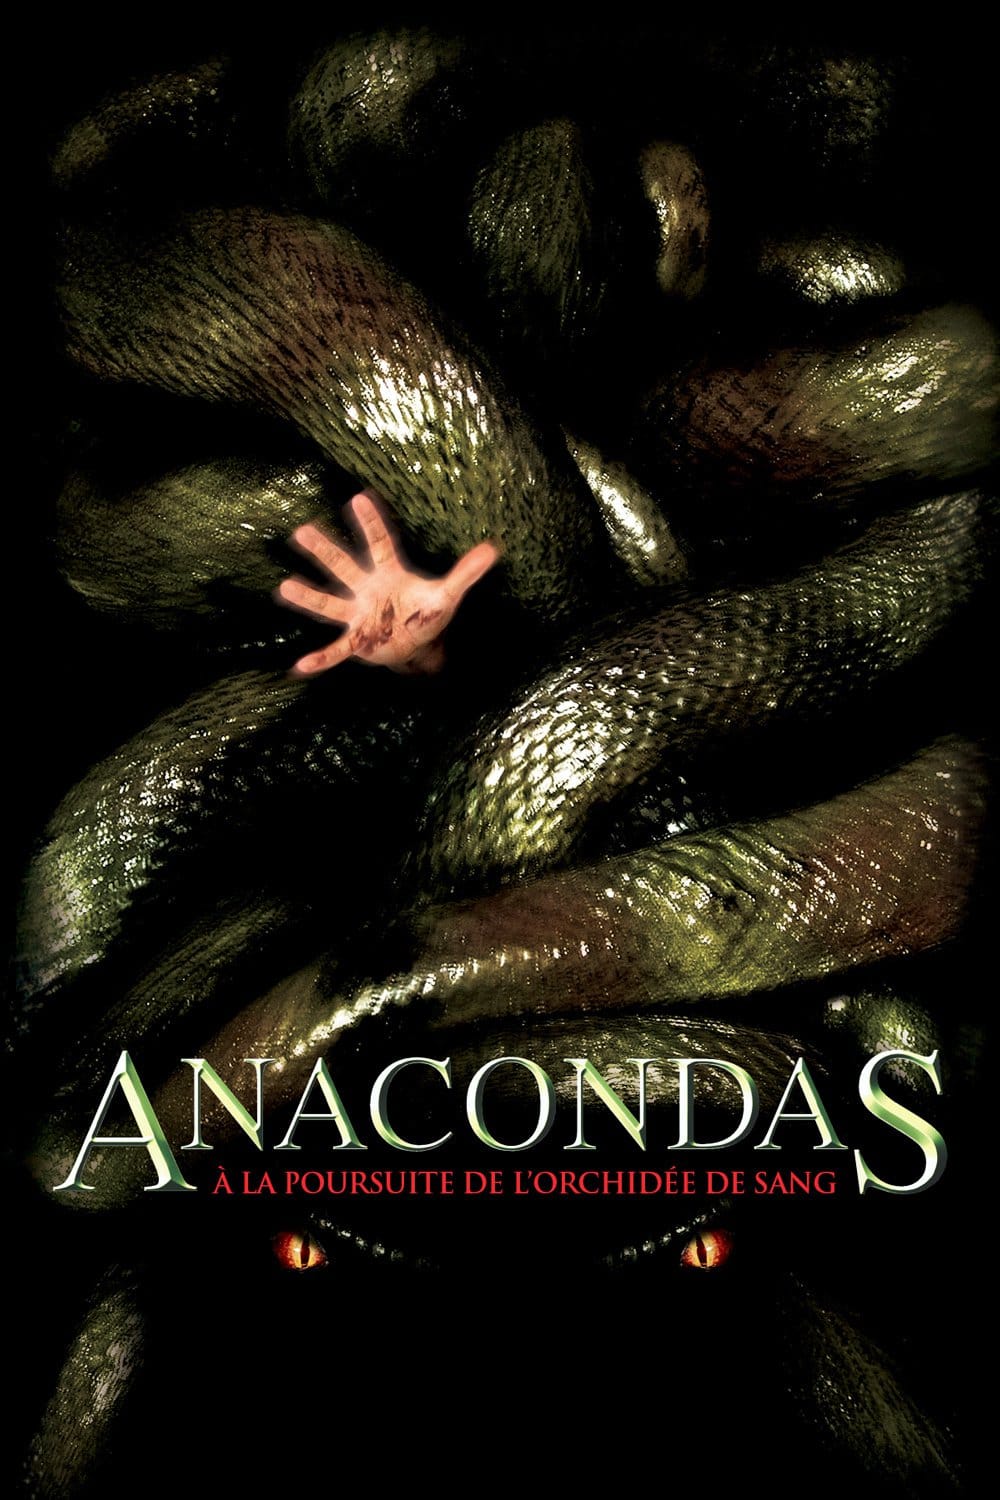 anaconda movie 2